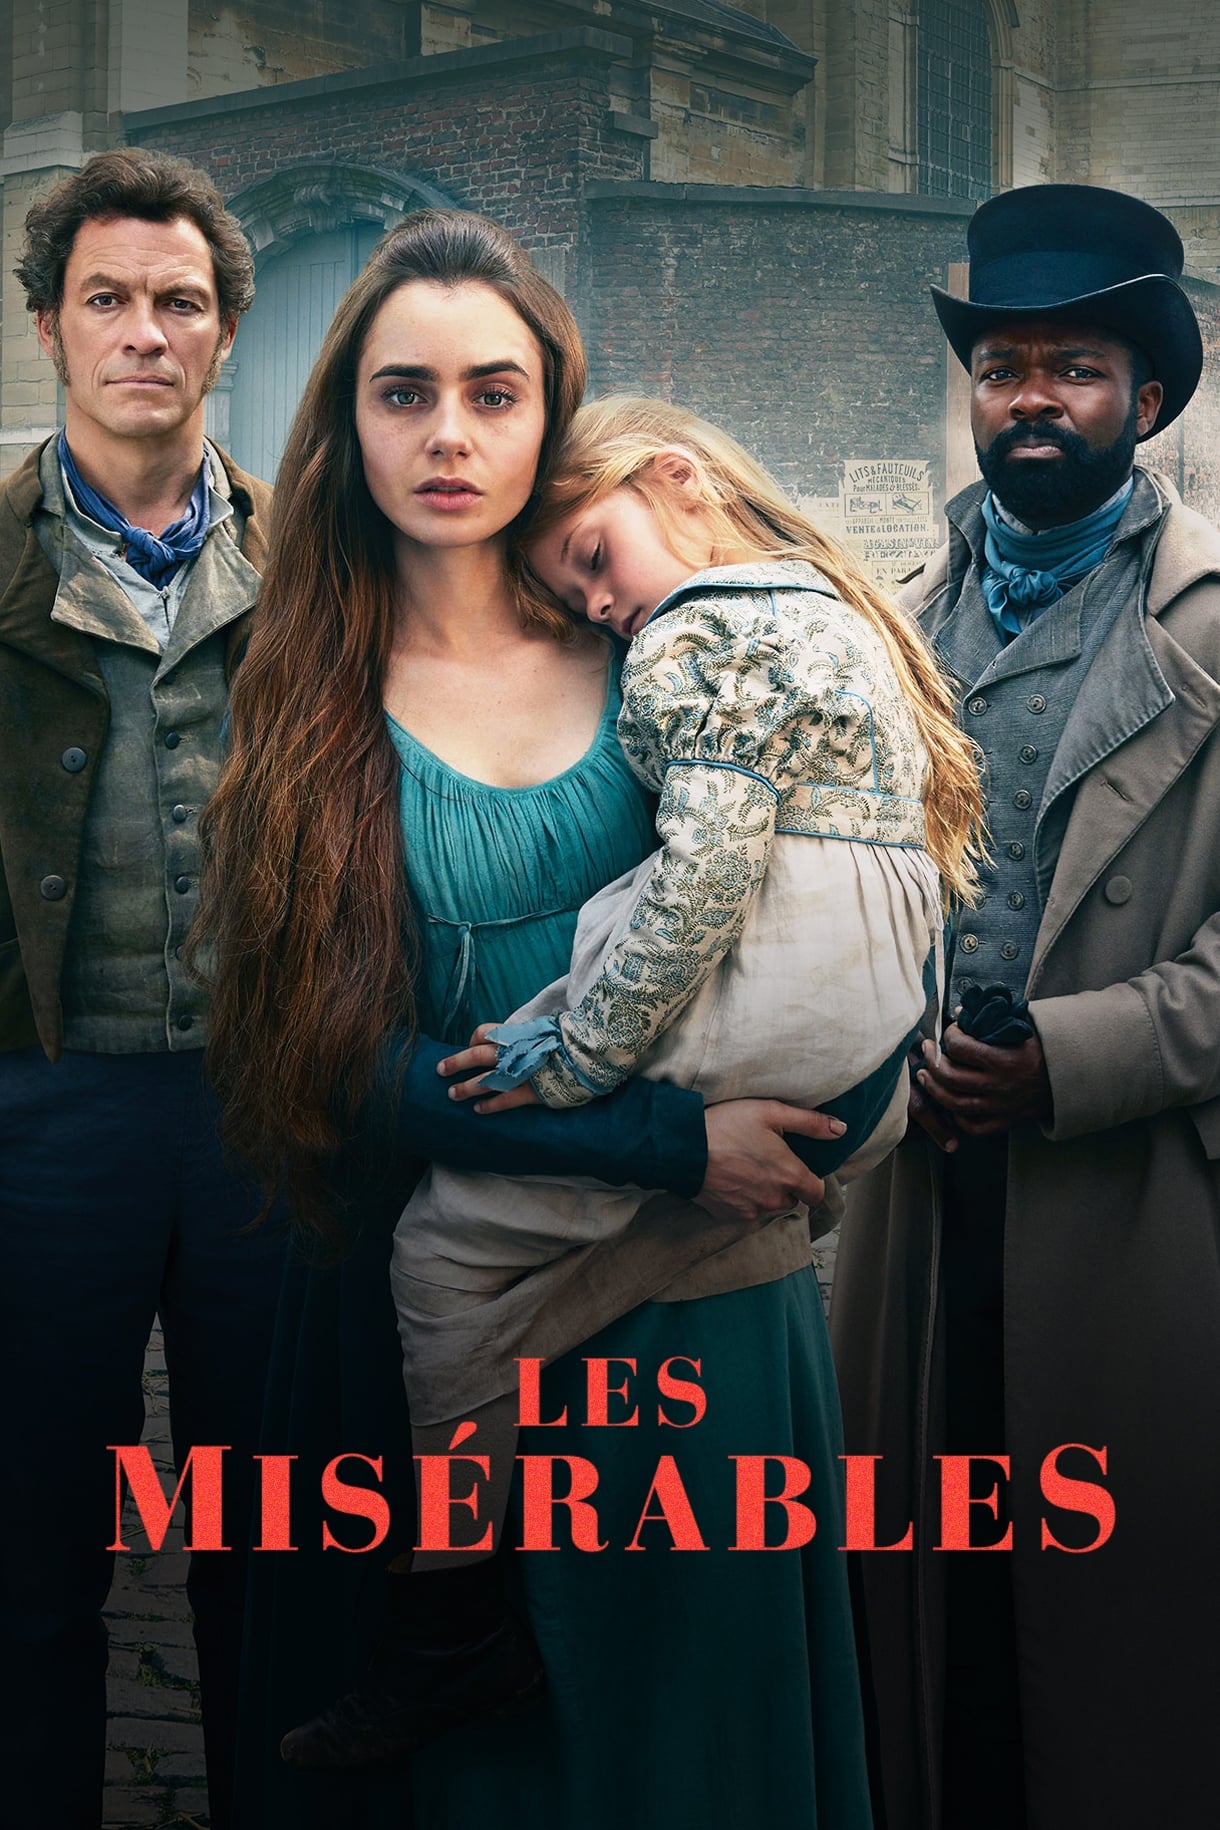 Les Misérables TV Shows About 19th Century